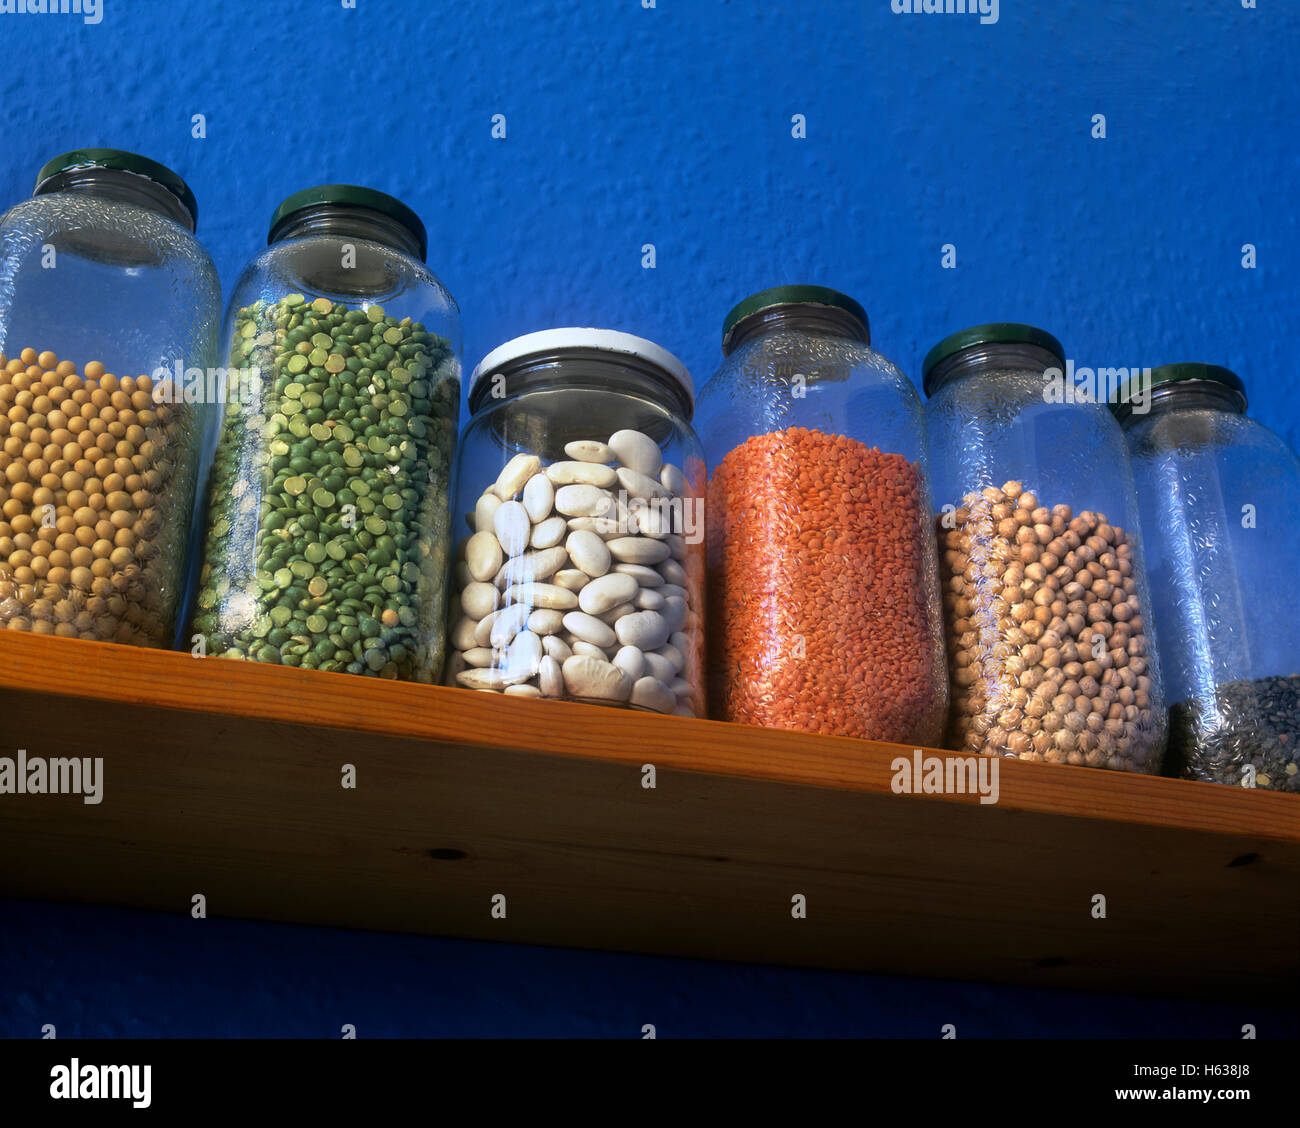 Pulsations dans les bocaux de stockage sur une étagère de cuisine : Fèves de soja, pois cassés verts, haricots beurre rouge, lentilles, pois chiches, lentilles du Puy. Banque D'Images